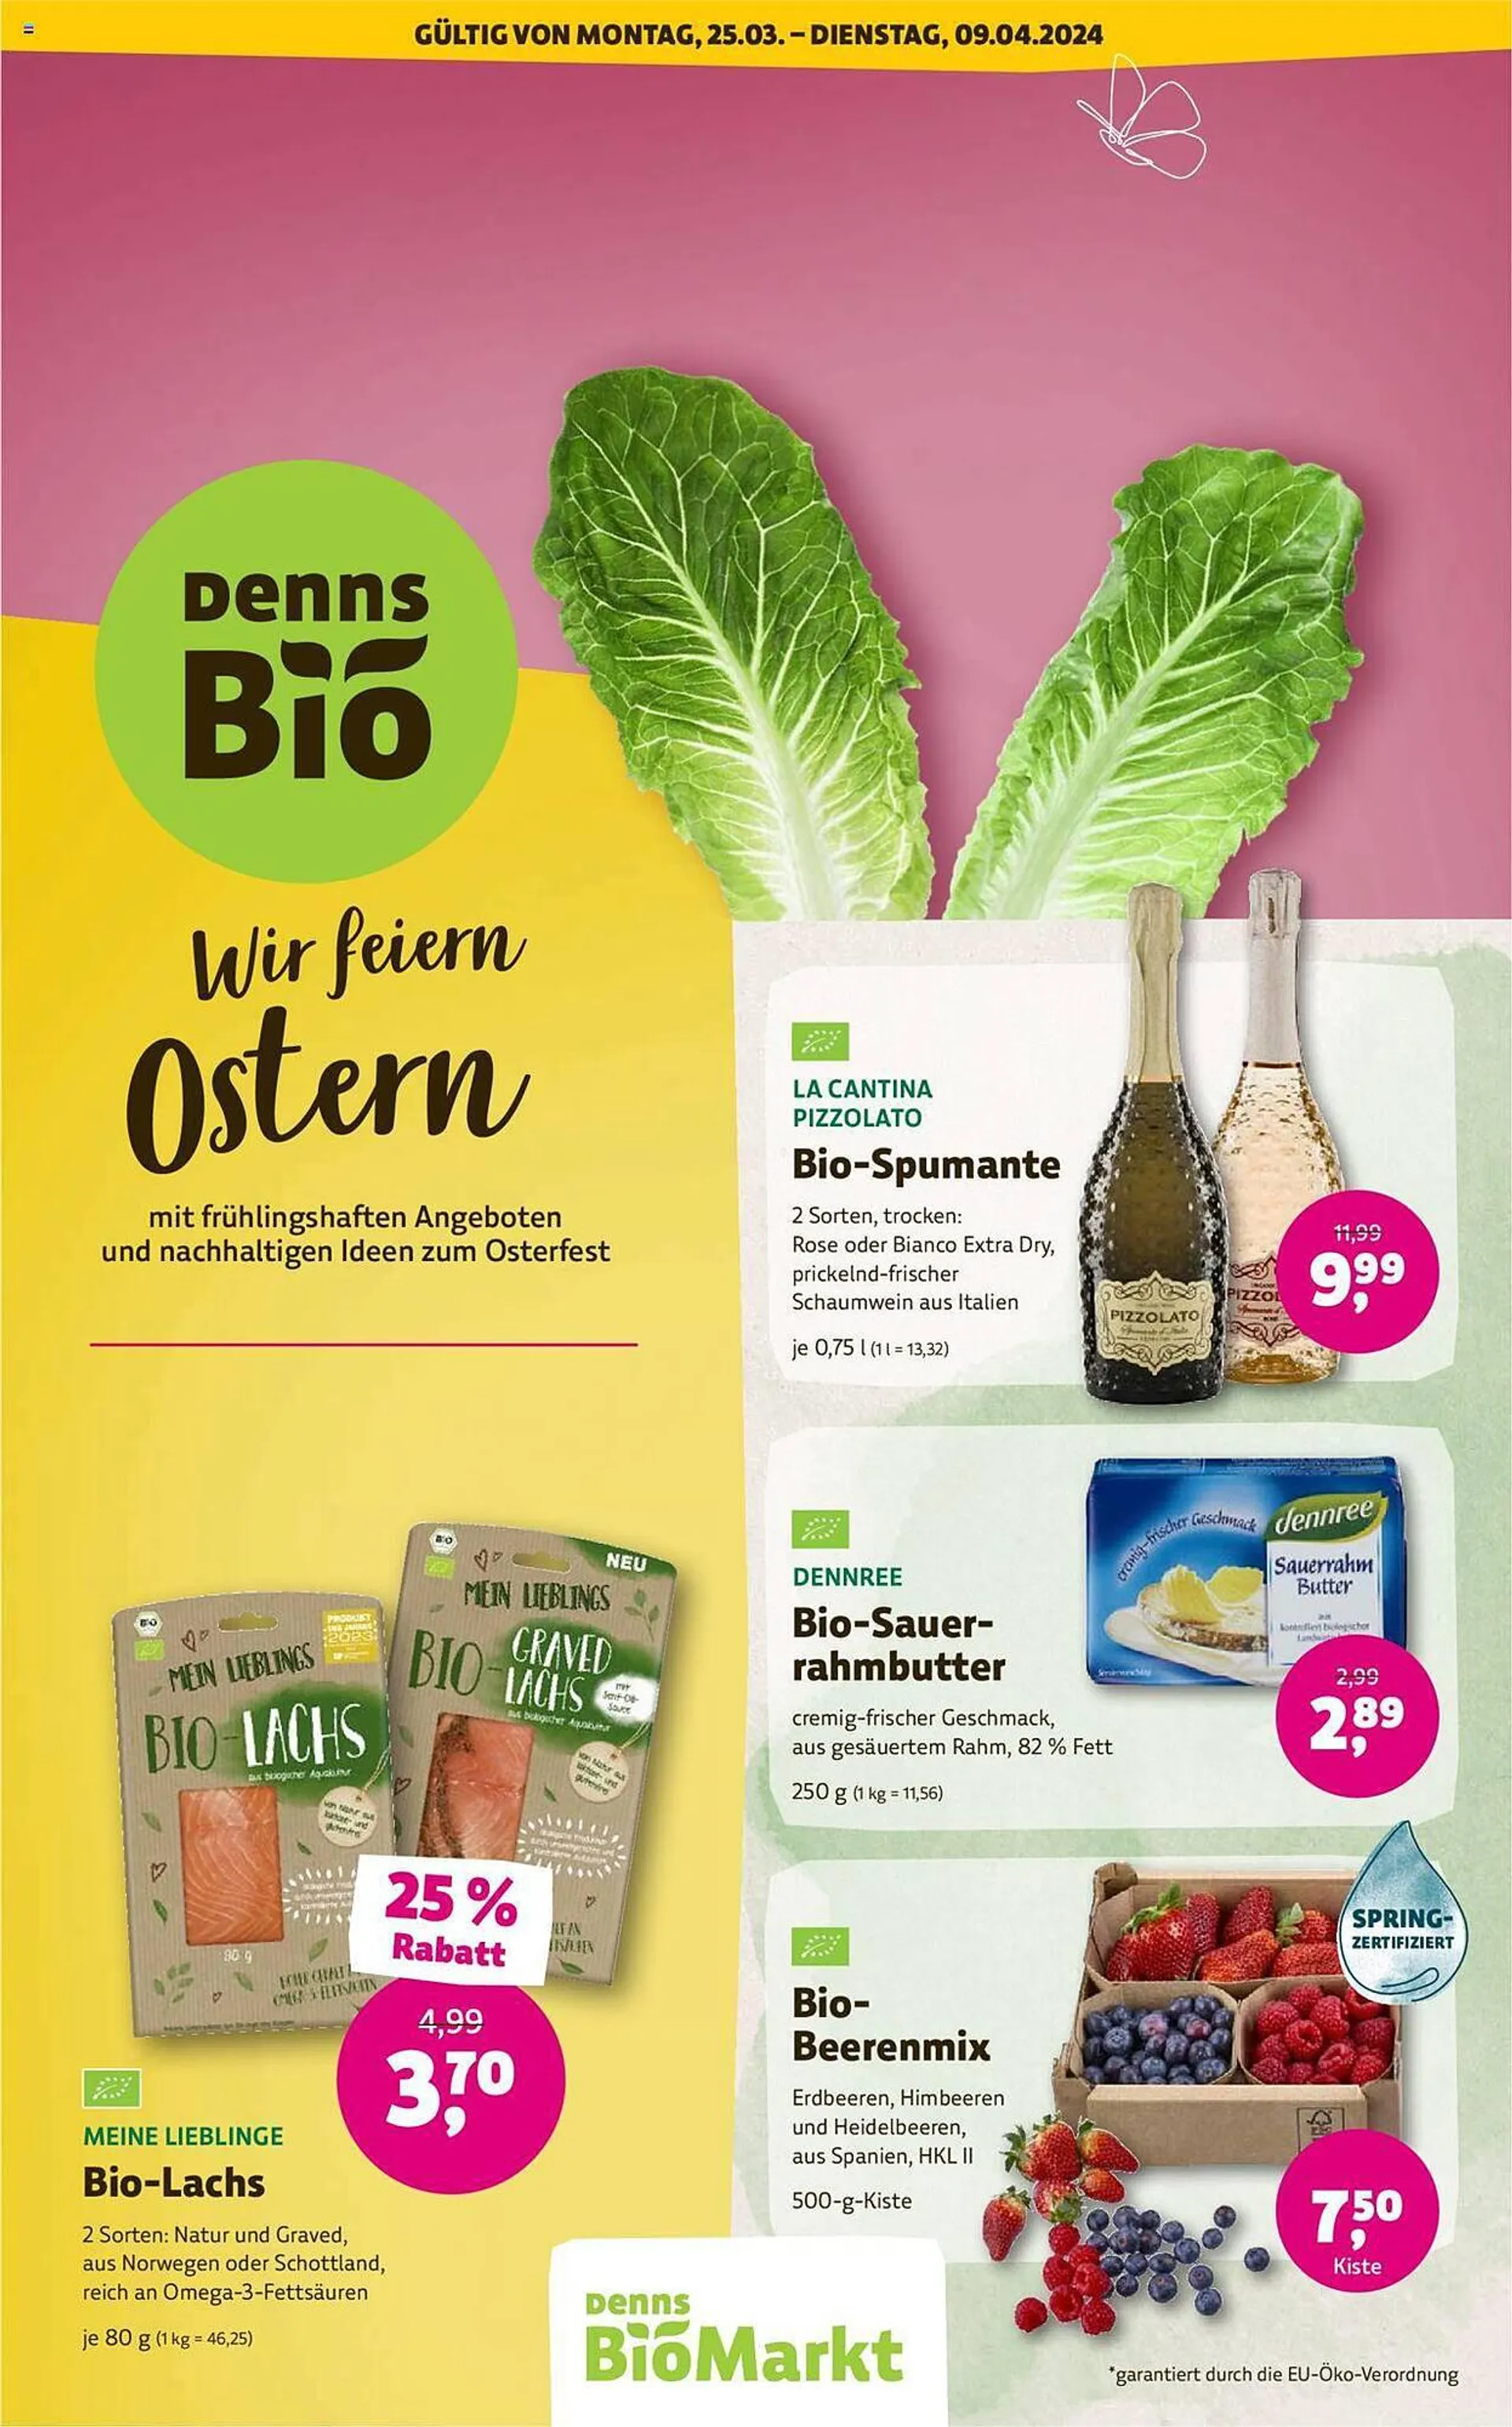 Denn's Biomarkt Flugblatt von 25. März bis 9. April 2024 - Flugblätt seite  1